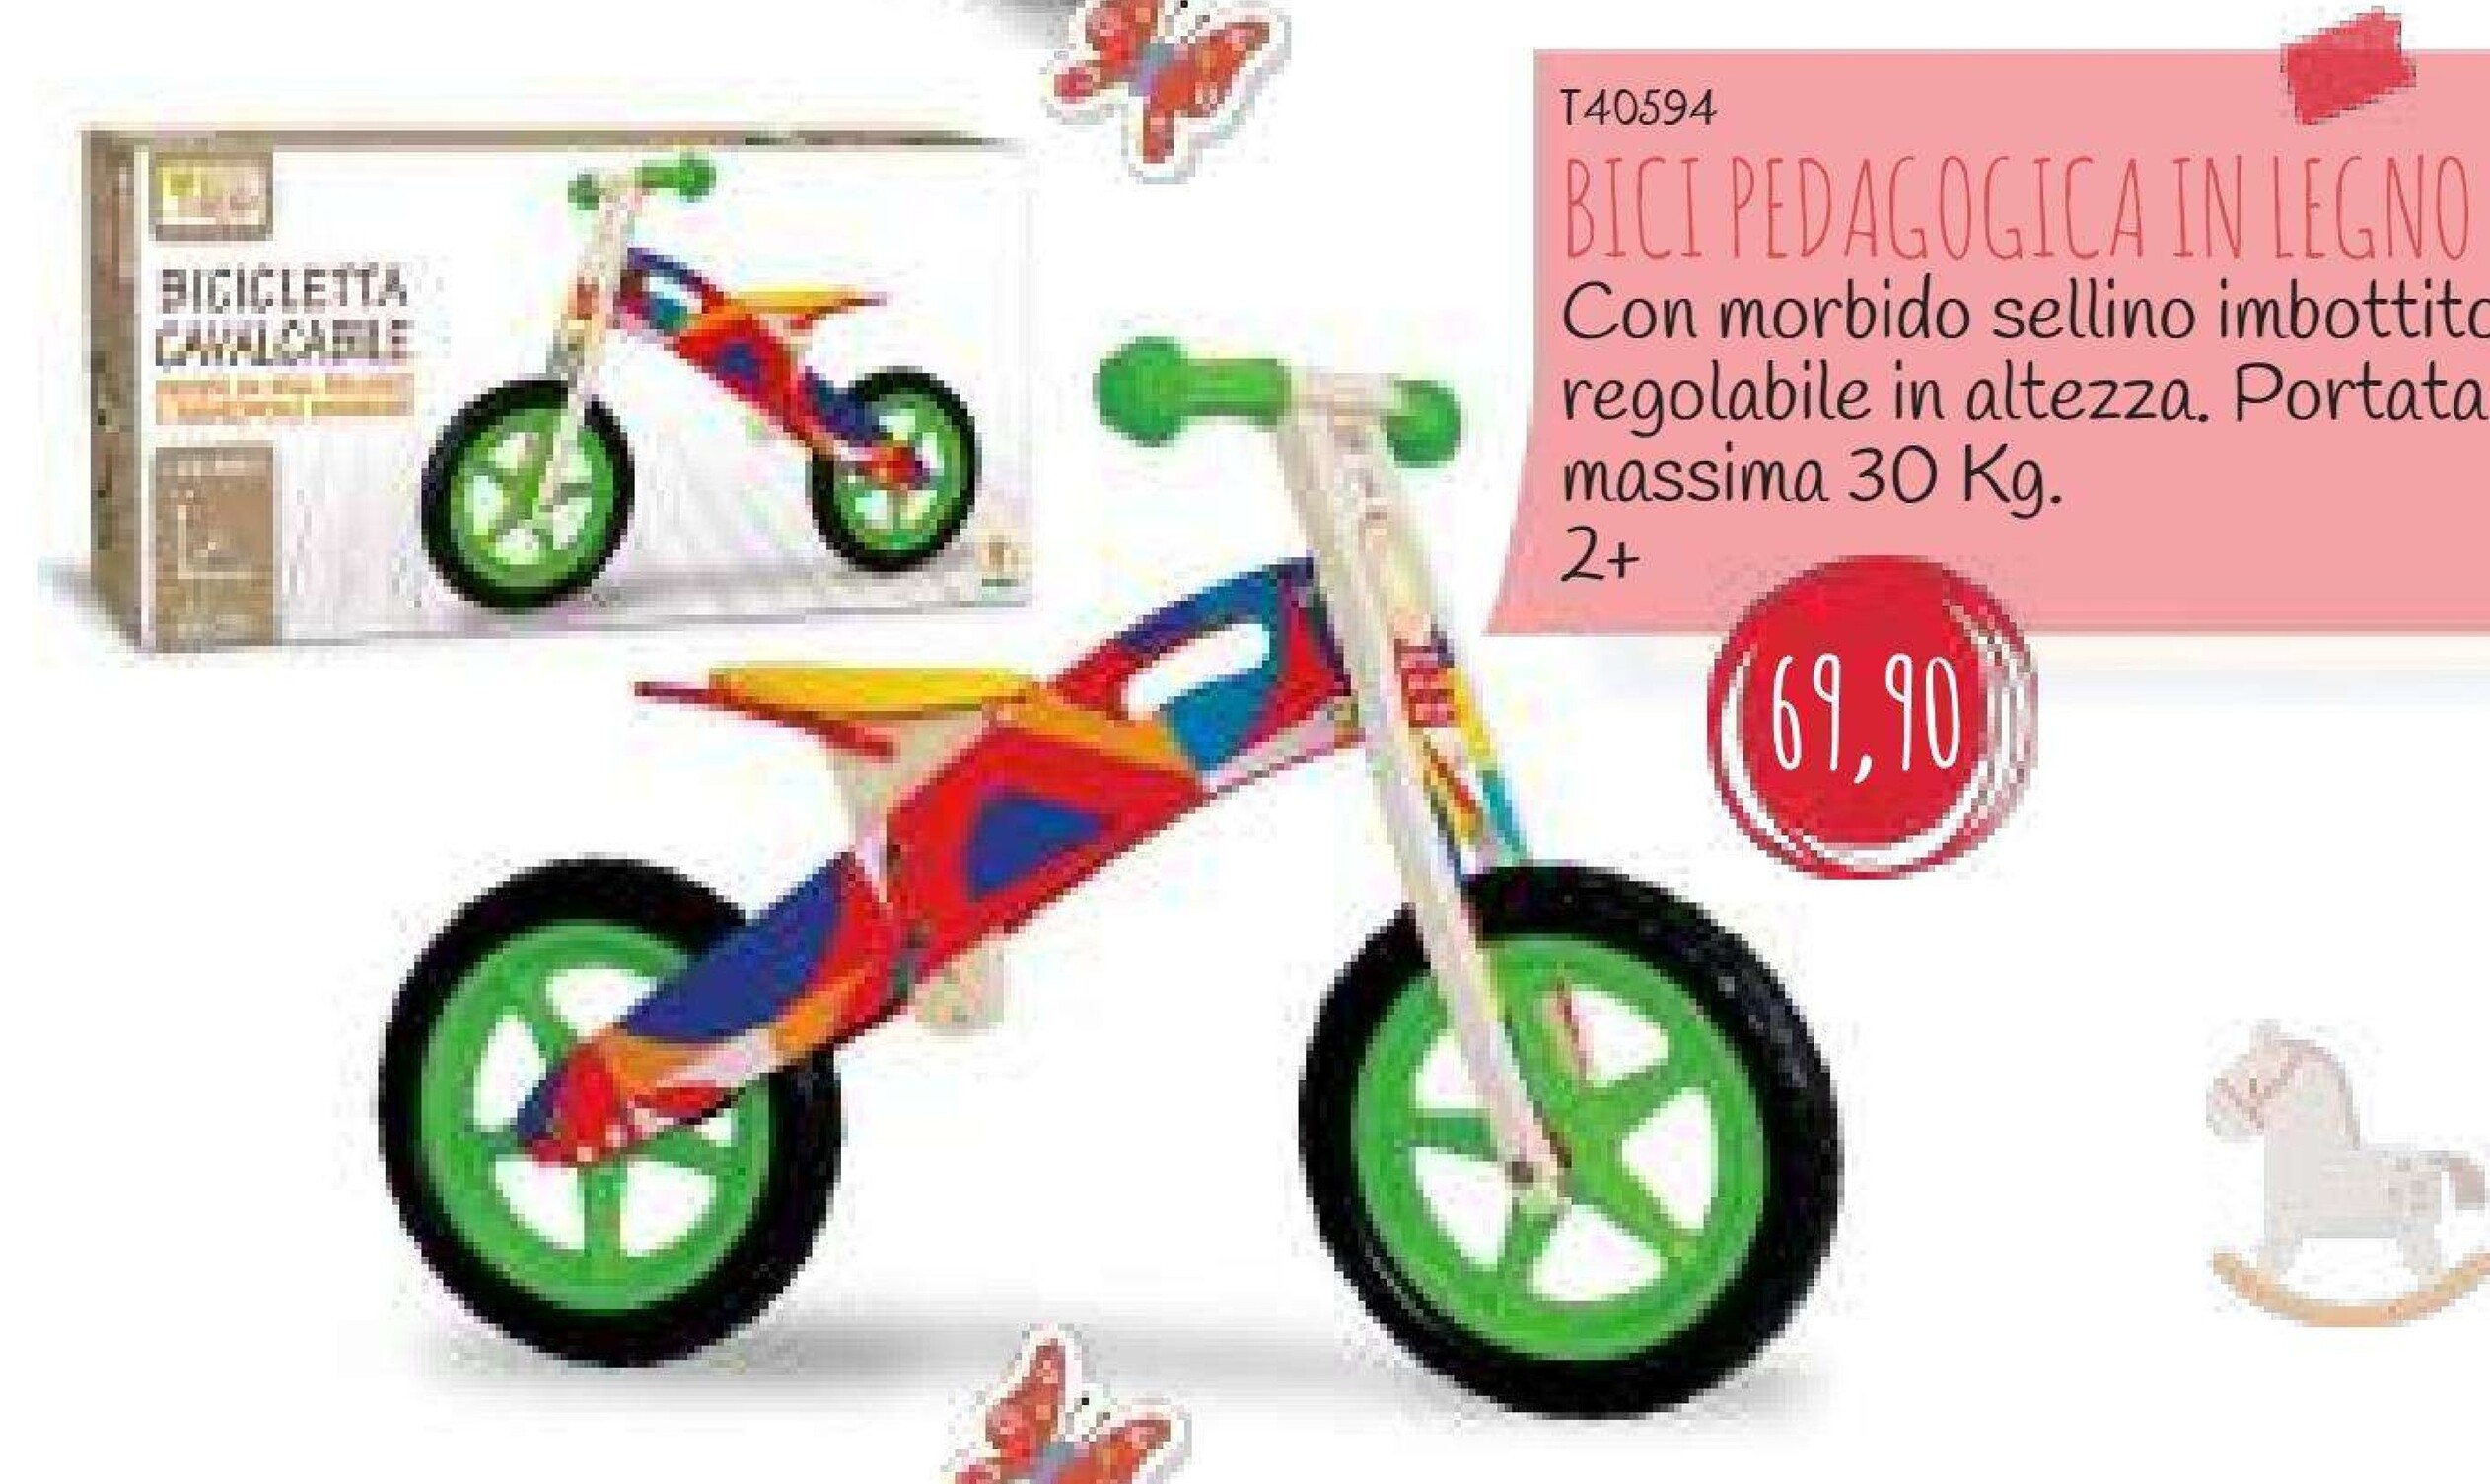 Offerta per Bici Pedagogica In Legno a 69,9€ in La Giraffa